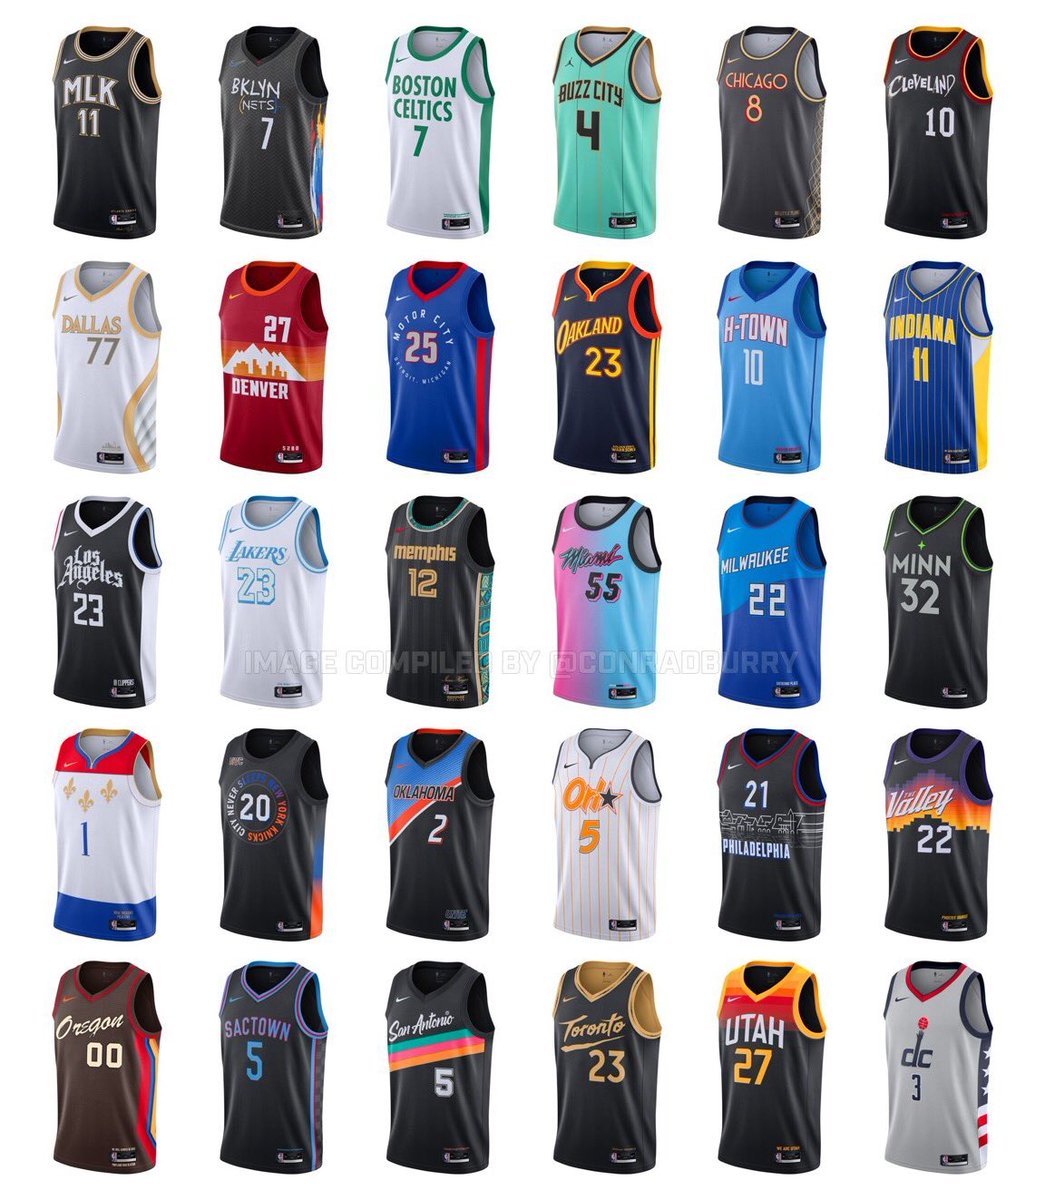 Gigantes Basket on Twitter: las camisetas City Edition para esta nueva temporada en la ¿Con cuál te quedas? 📷@conradburry https://t.co/1Qqmyl9dF4" / Twitter